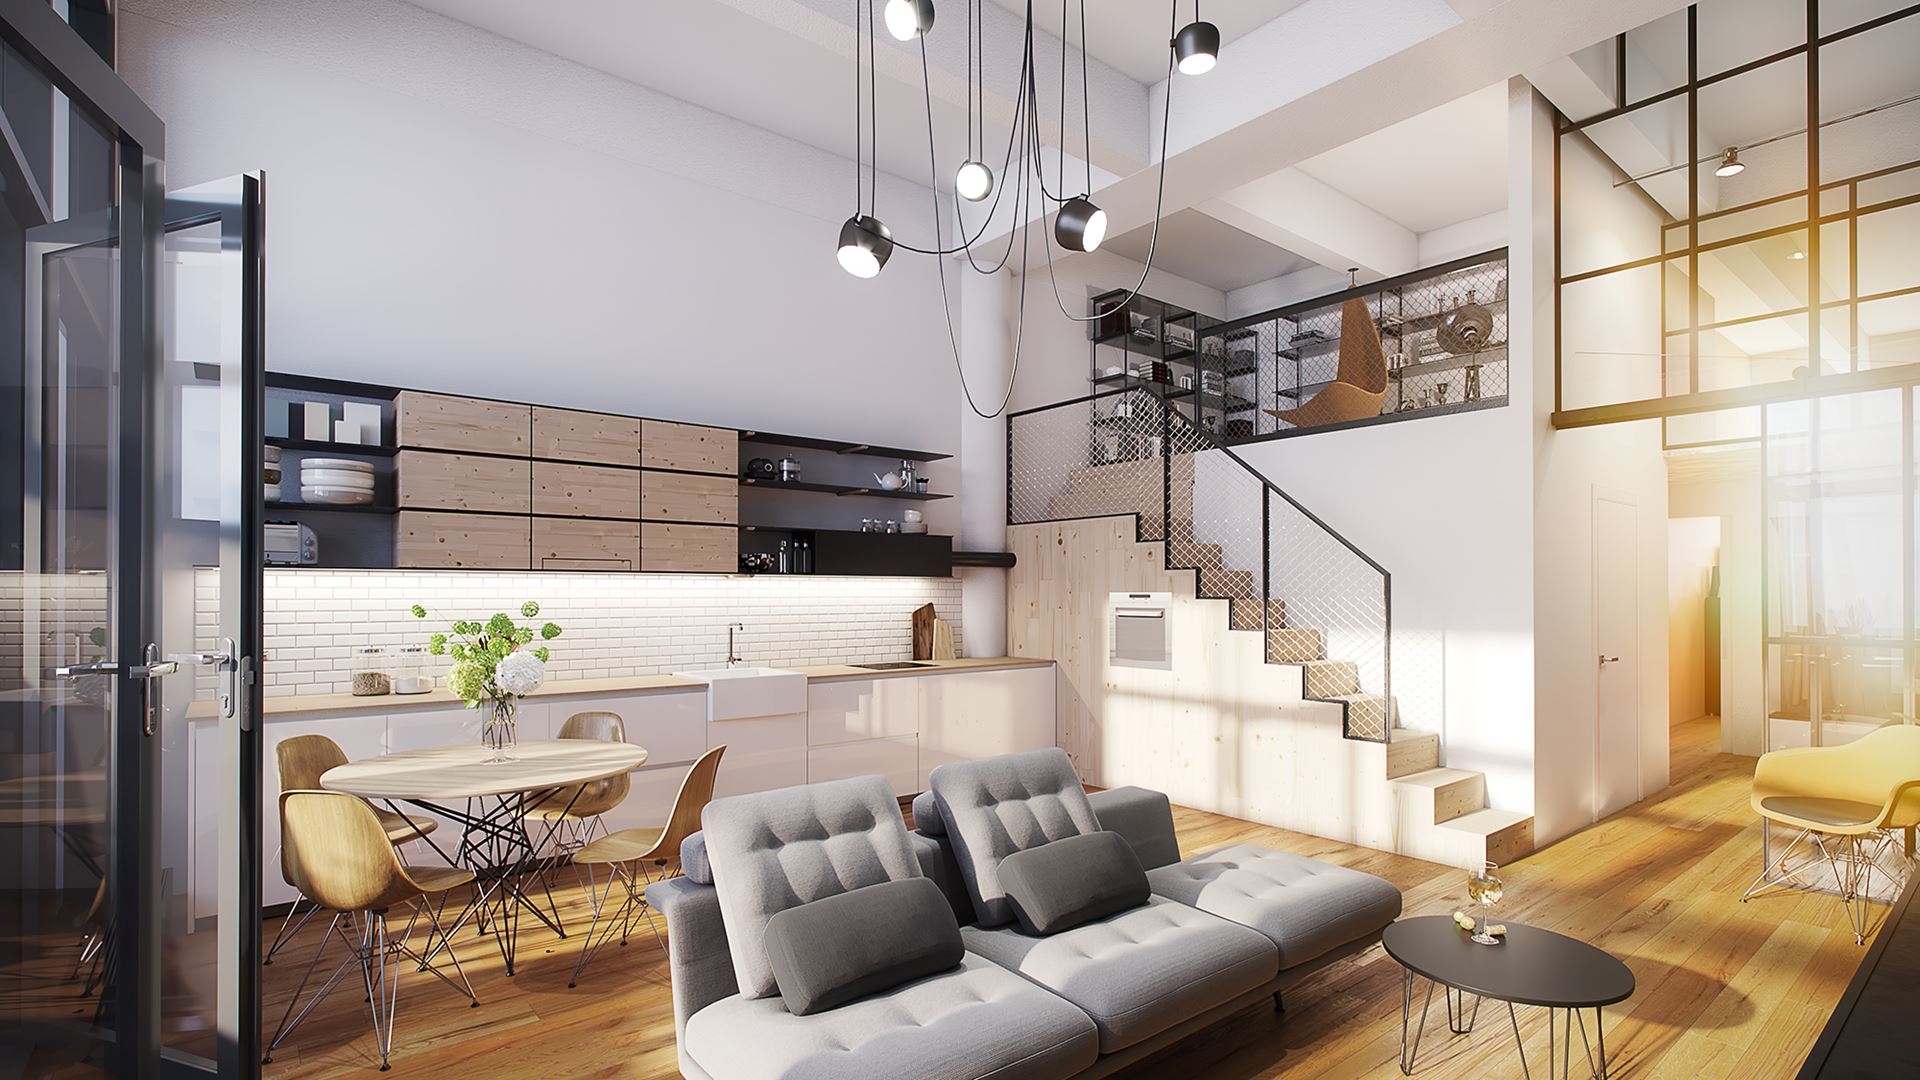 PARVI Cibulka - modern loft-style apartments